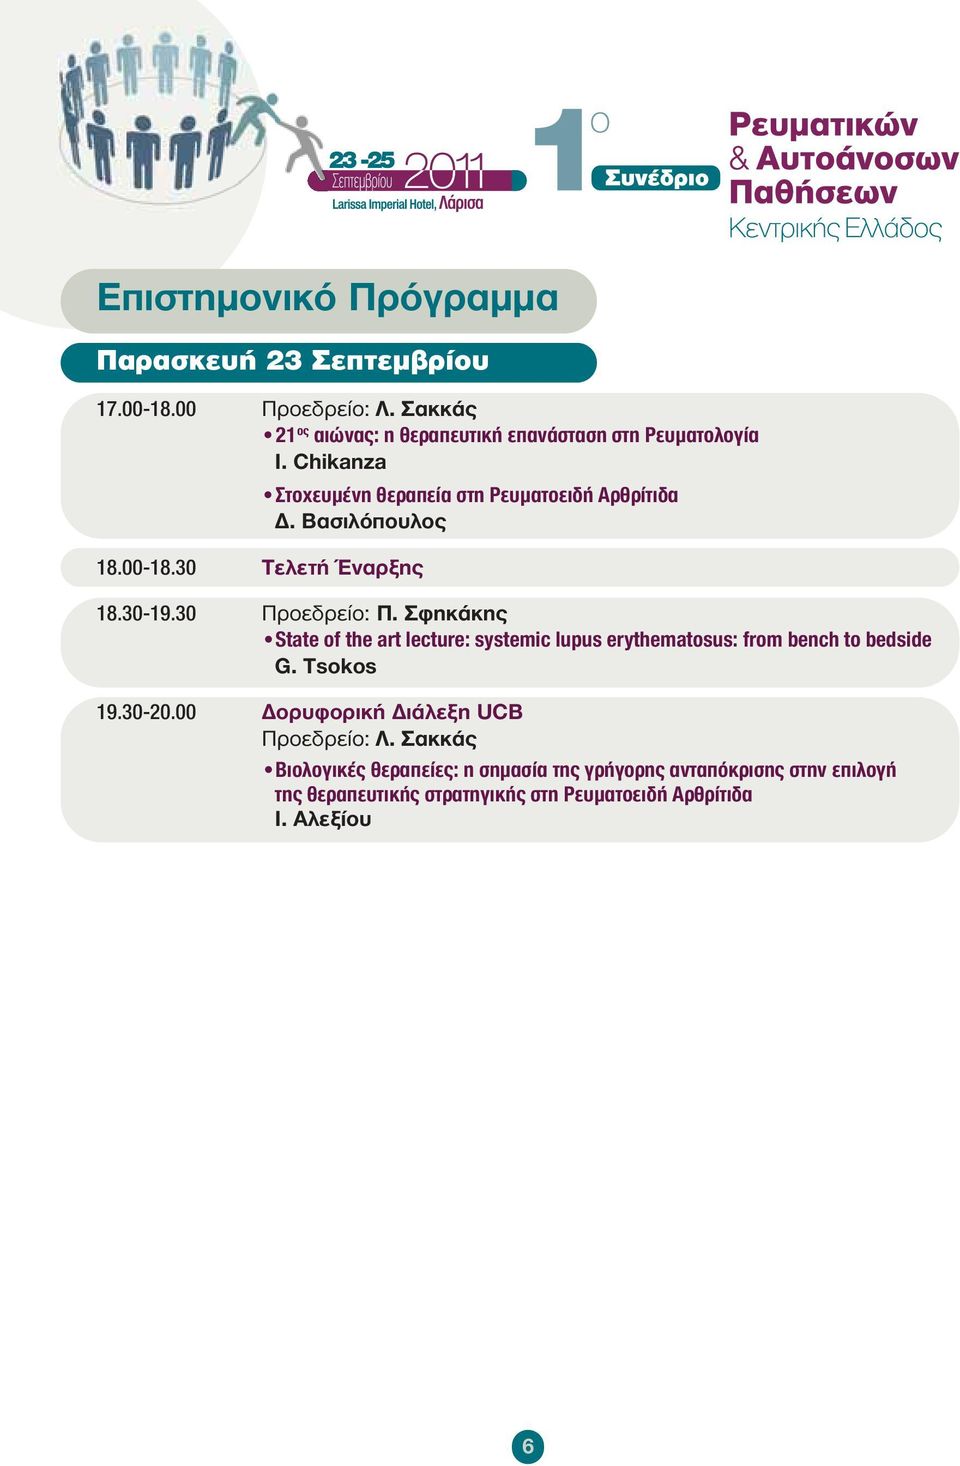 Σφηκάκης State of the art lecture: systemic lupus erythematosus: from bench to bedside G. Tsokos 19.30-20.